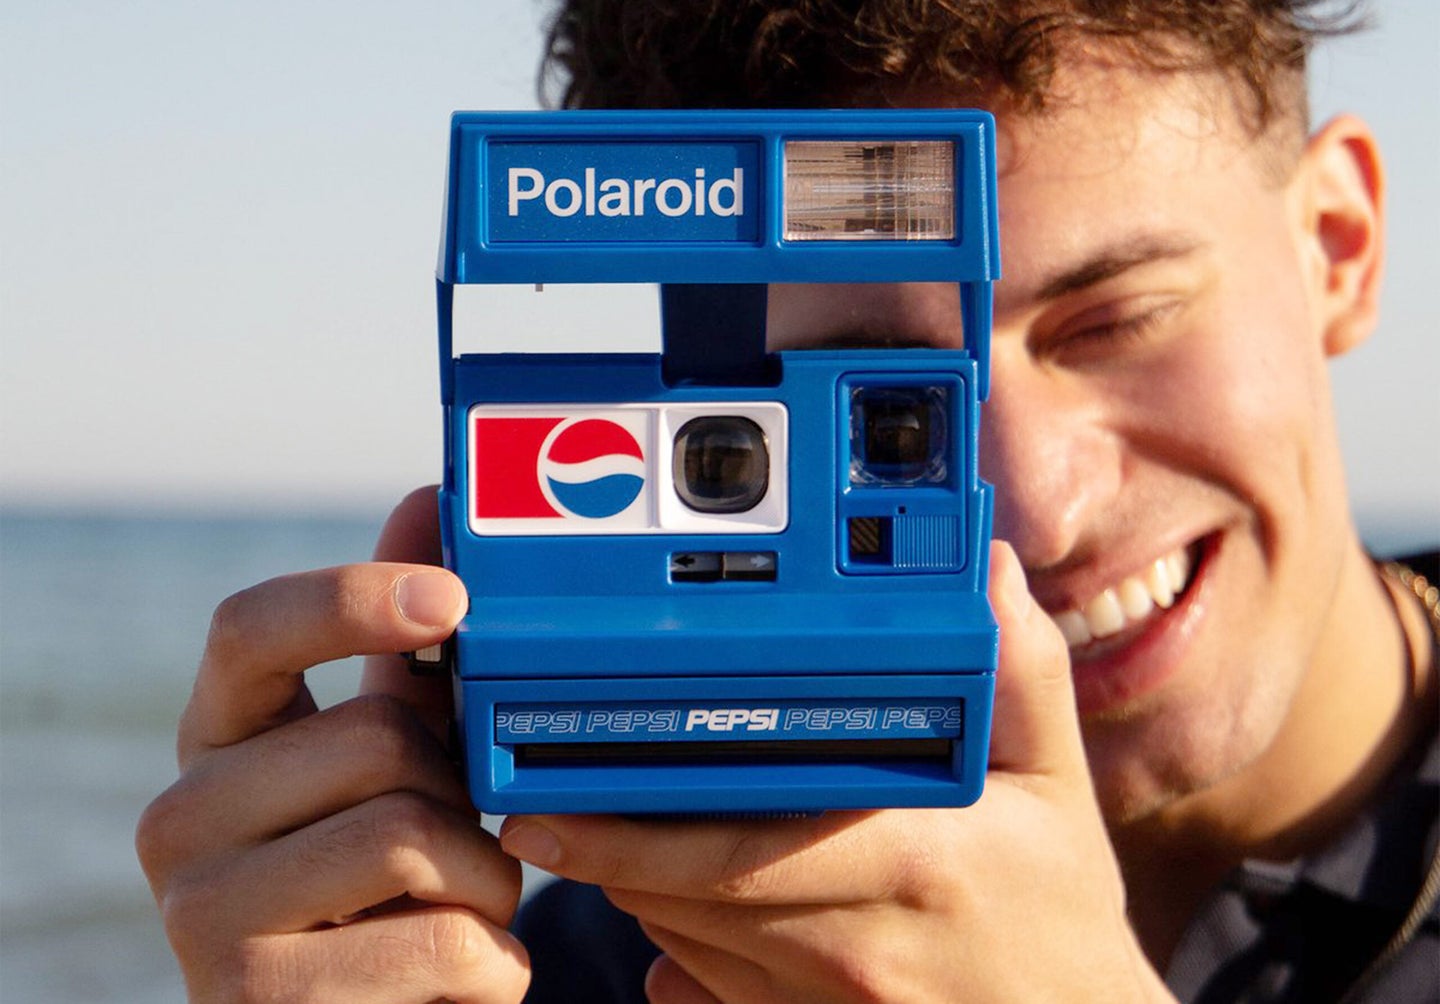 The new Pepsi x Polaroid 600 collaborative camera